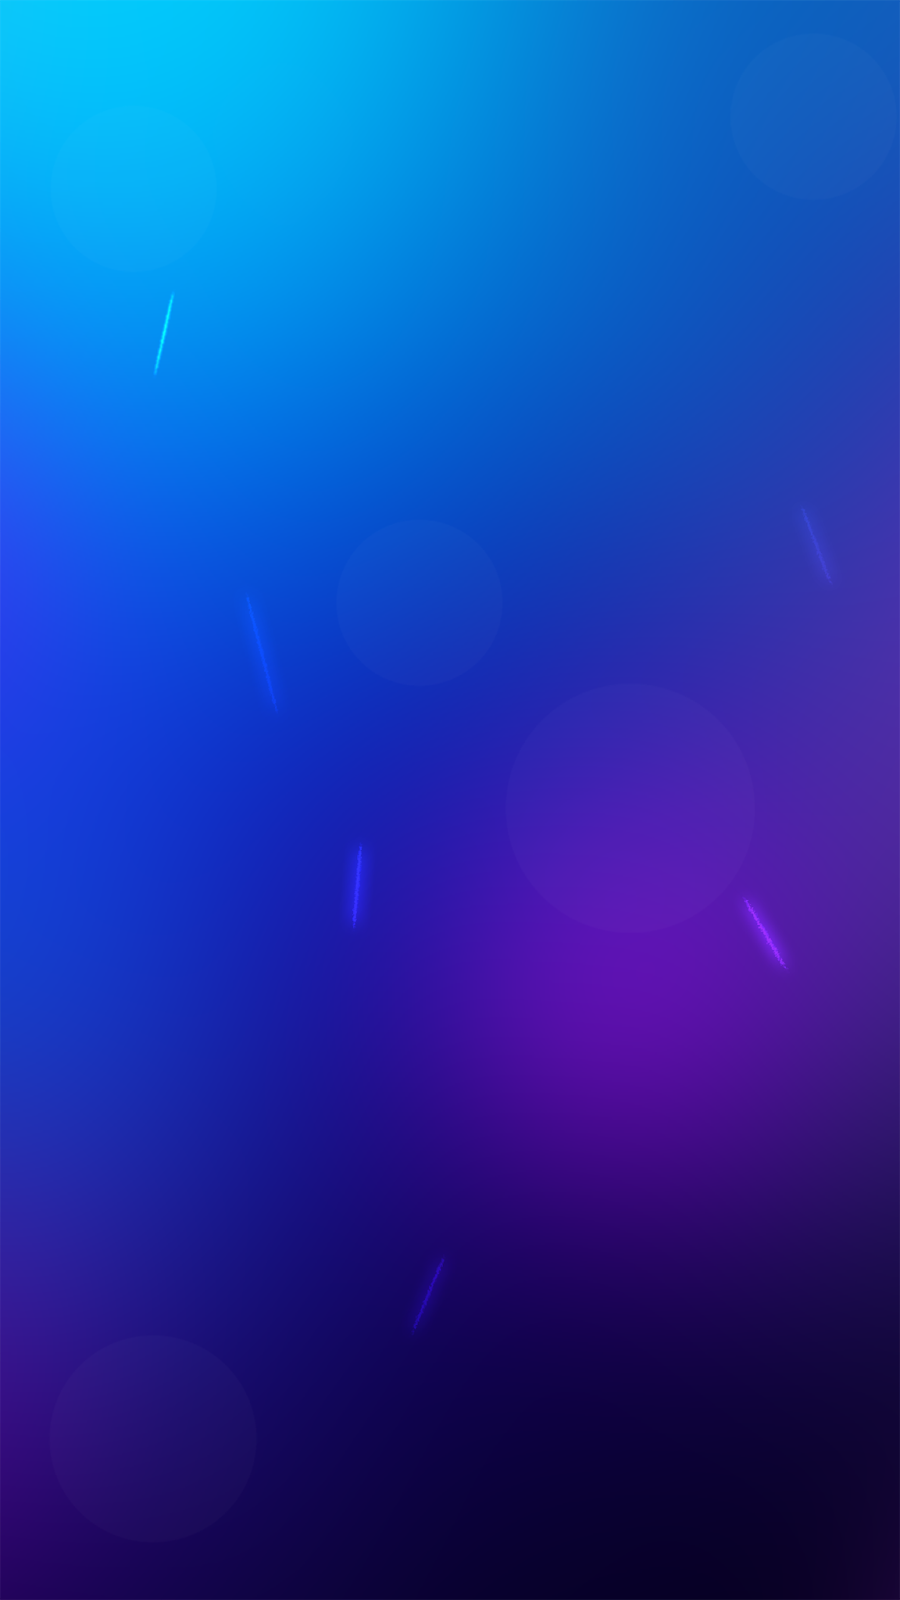 galaxy s7 fondo de pantalla,azul,violeta,púrpura,azul cobalto,azul eléctrico